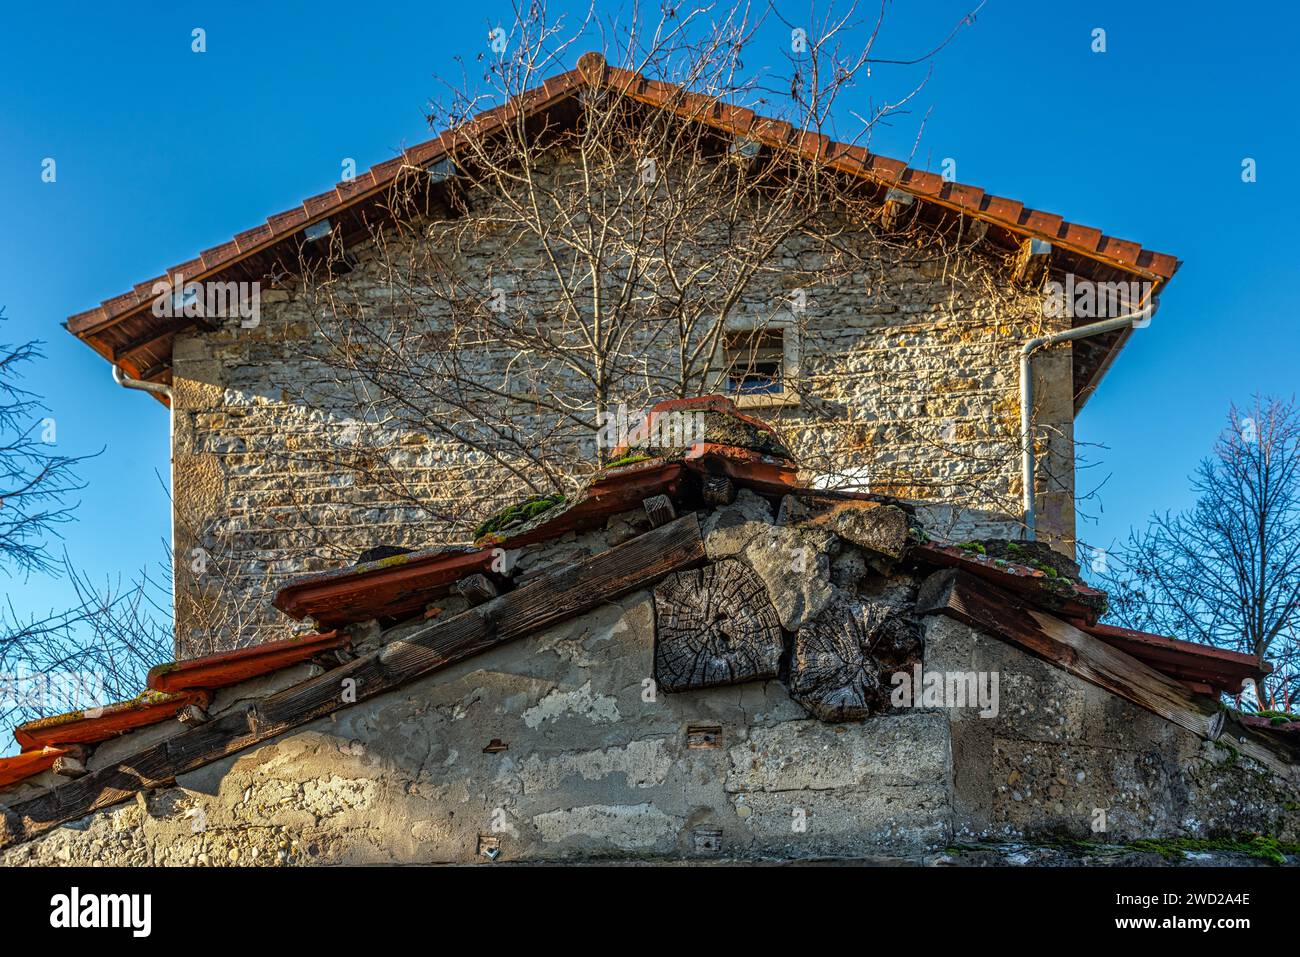 Tetti in legno di una casa in pietra restaurata in Francia. Saint-Quentin-Fallavier, dipartimento dell'Isère, regione Auvergne-Rhône-Alpes, Francia, Europa Foto Stock